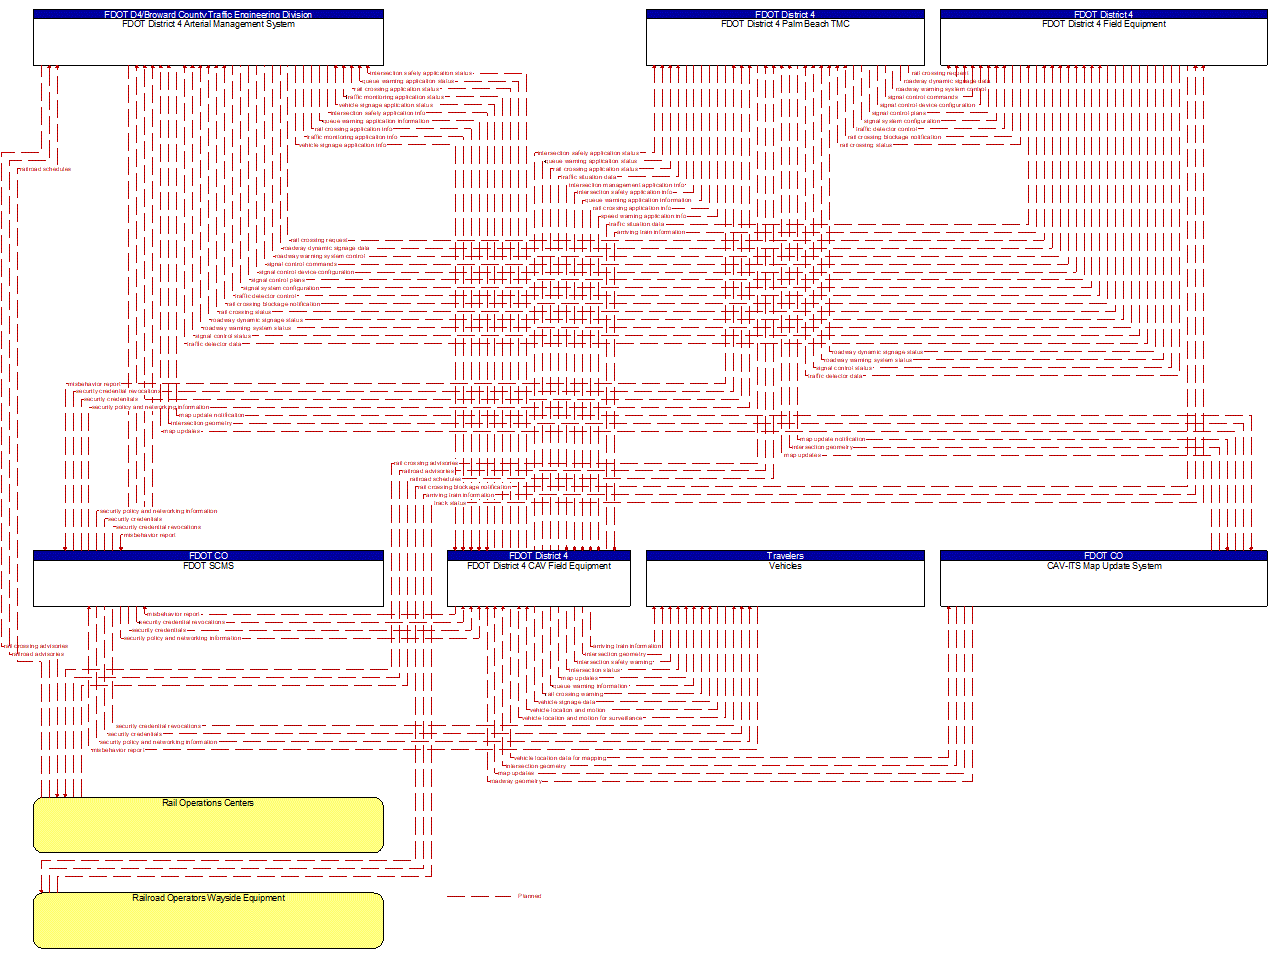 Project Information Flow Diagram: FDOT District 4